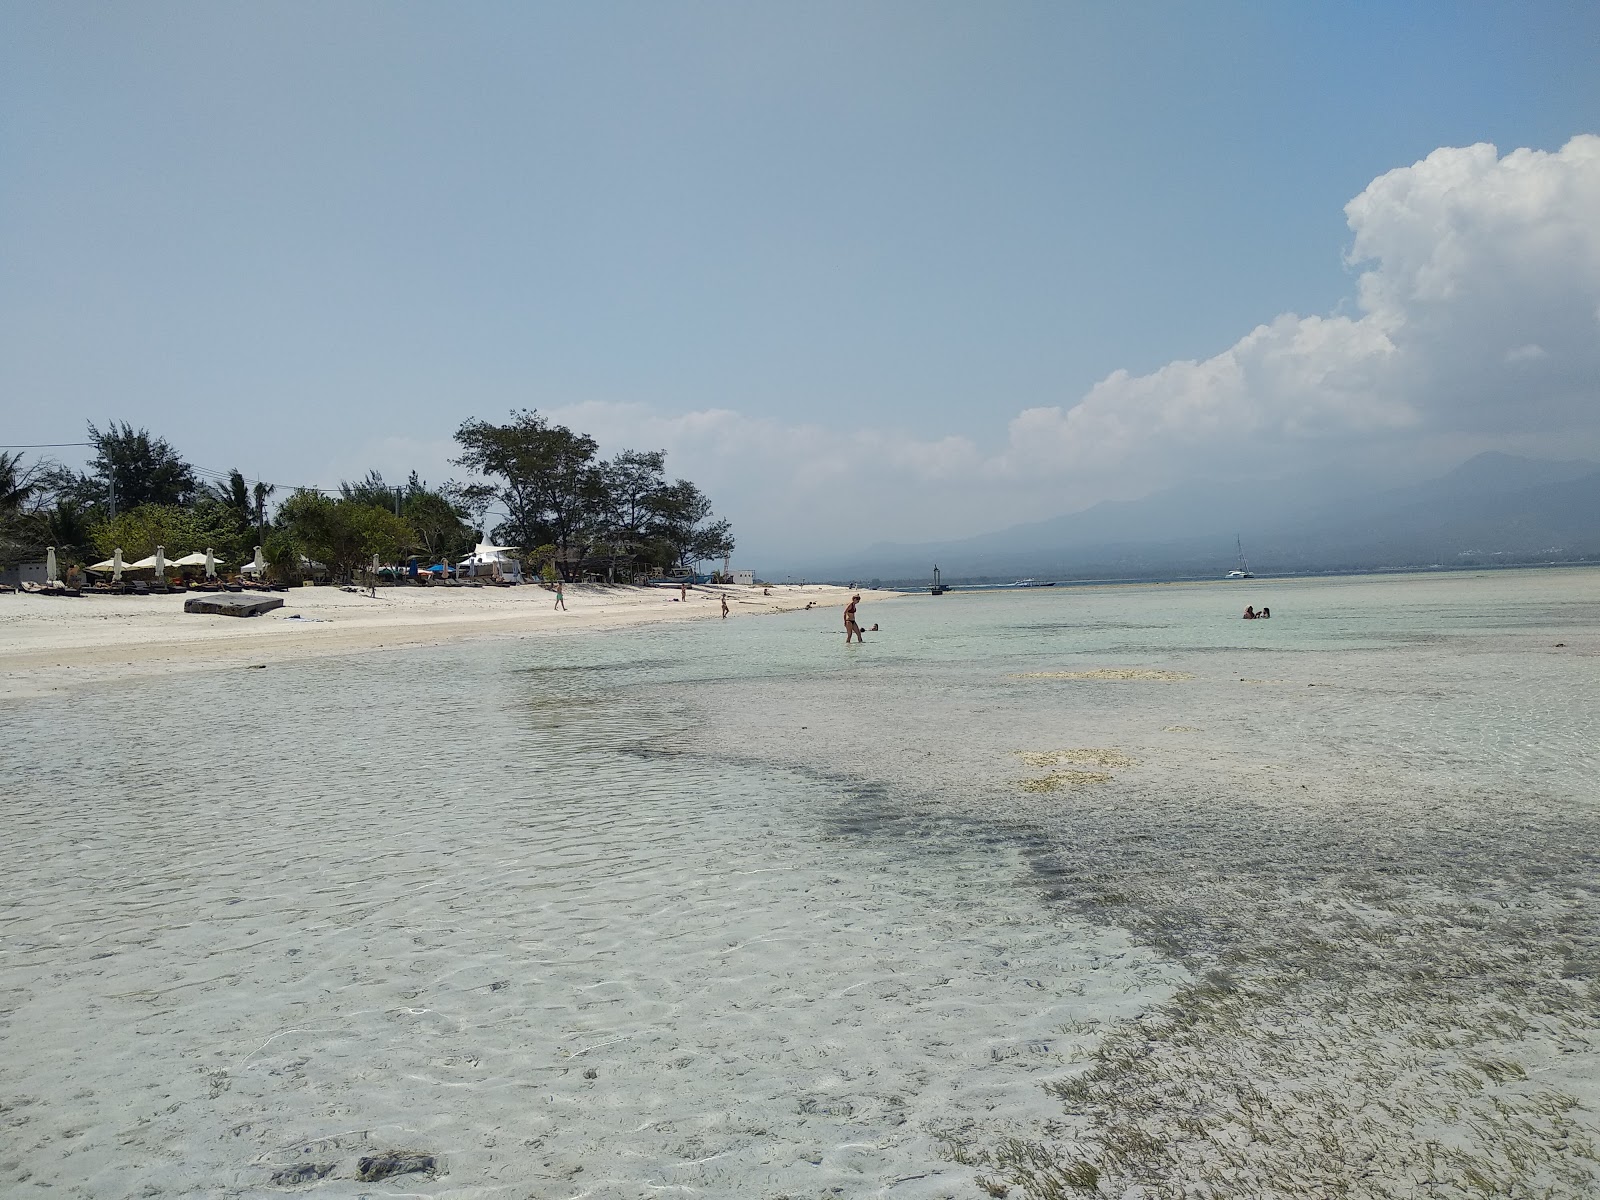 Fotografie cu Gili Air Lumbung Beach cu o suprafață de apa pură turcoaz